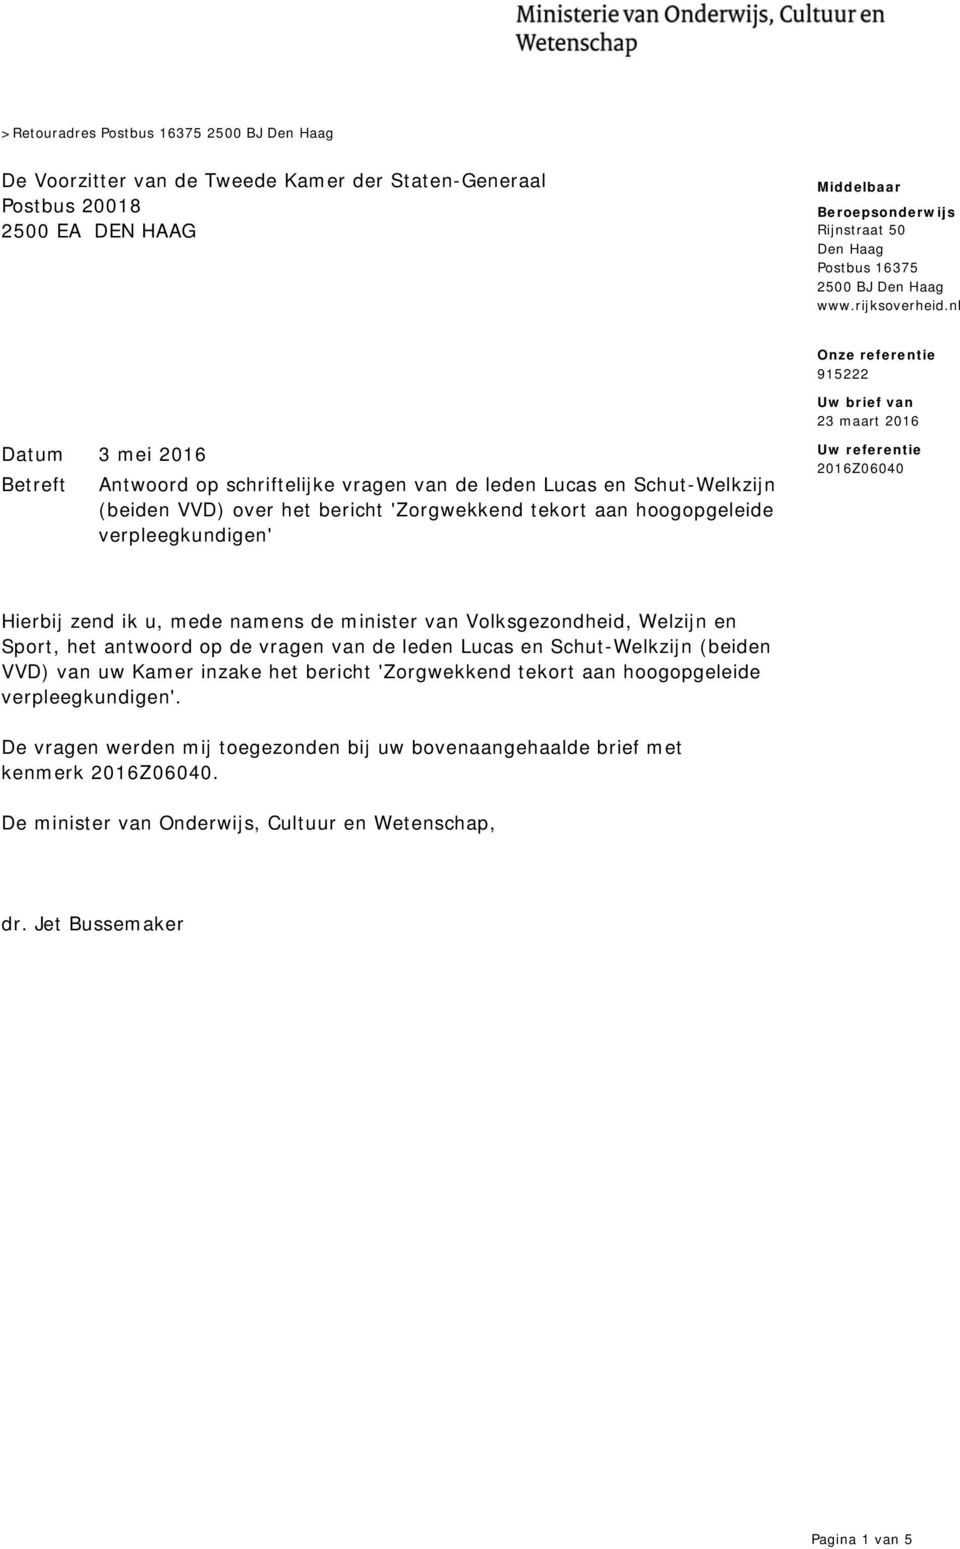 nl Uw brief van 23 maart 2016 Datum 3 mei 2016 Betreft Antwoord op schriftelijke vragen van de leden Lucas en Schut-Welkzijn (beiden VVD) over het bericht 'Zorgwekkend tekort aan hoogopgeleide